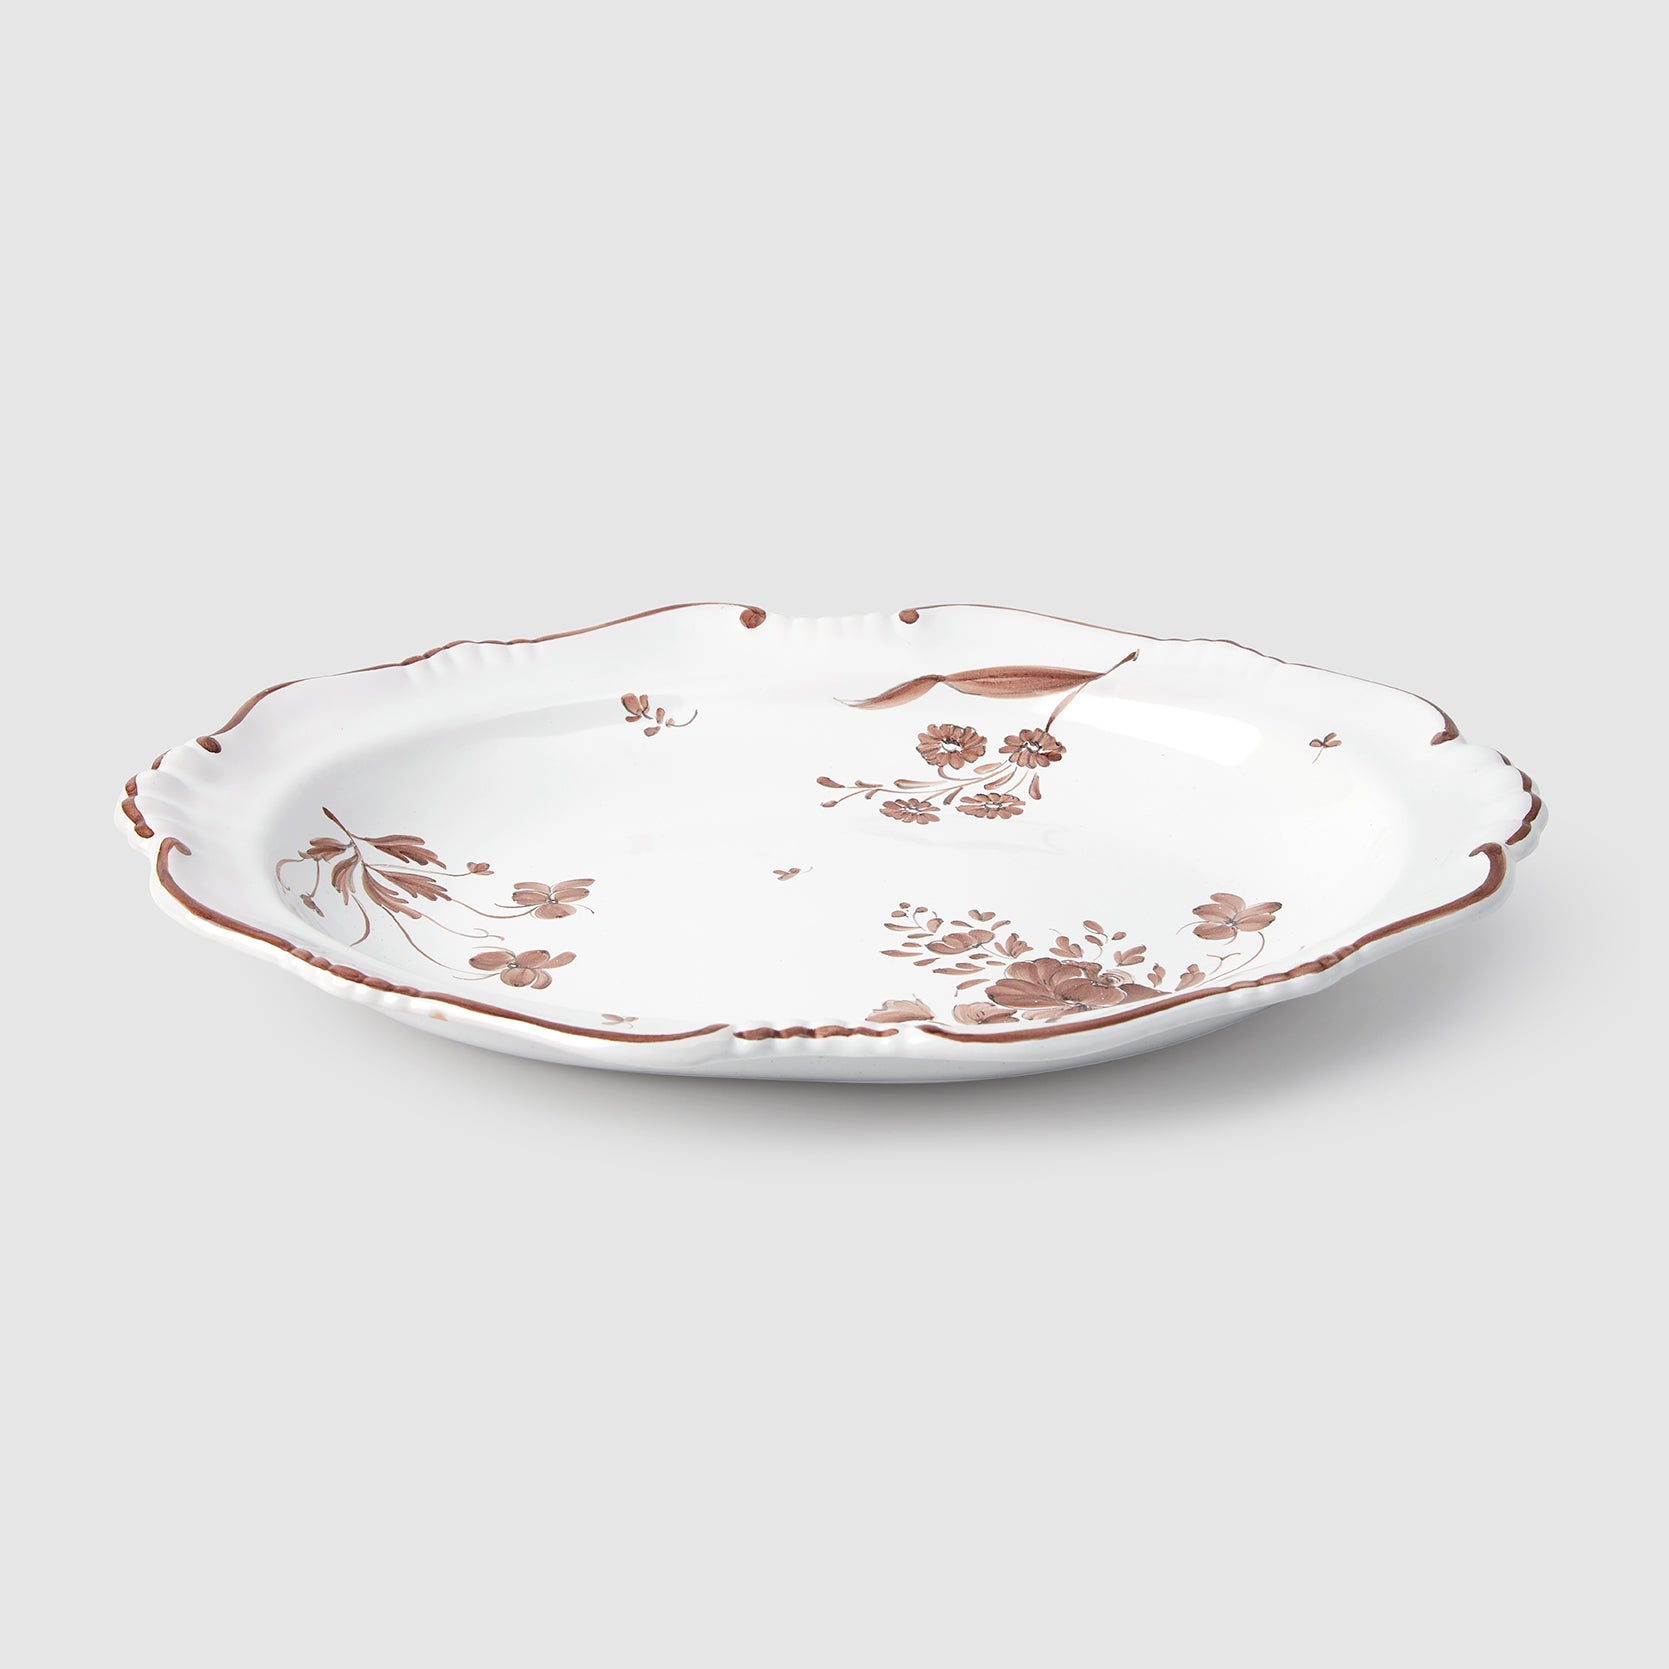 Camaieu Medium Oval Serving Dish, Chocolat